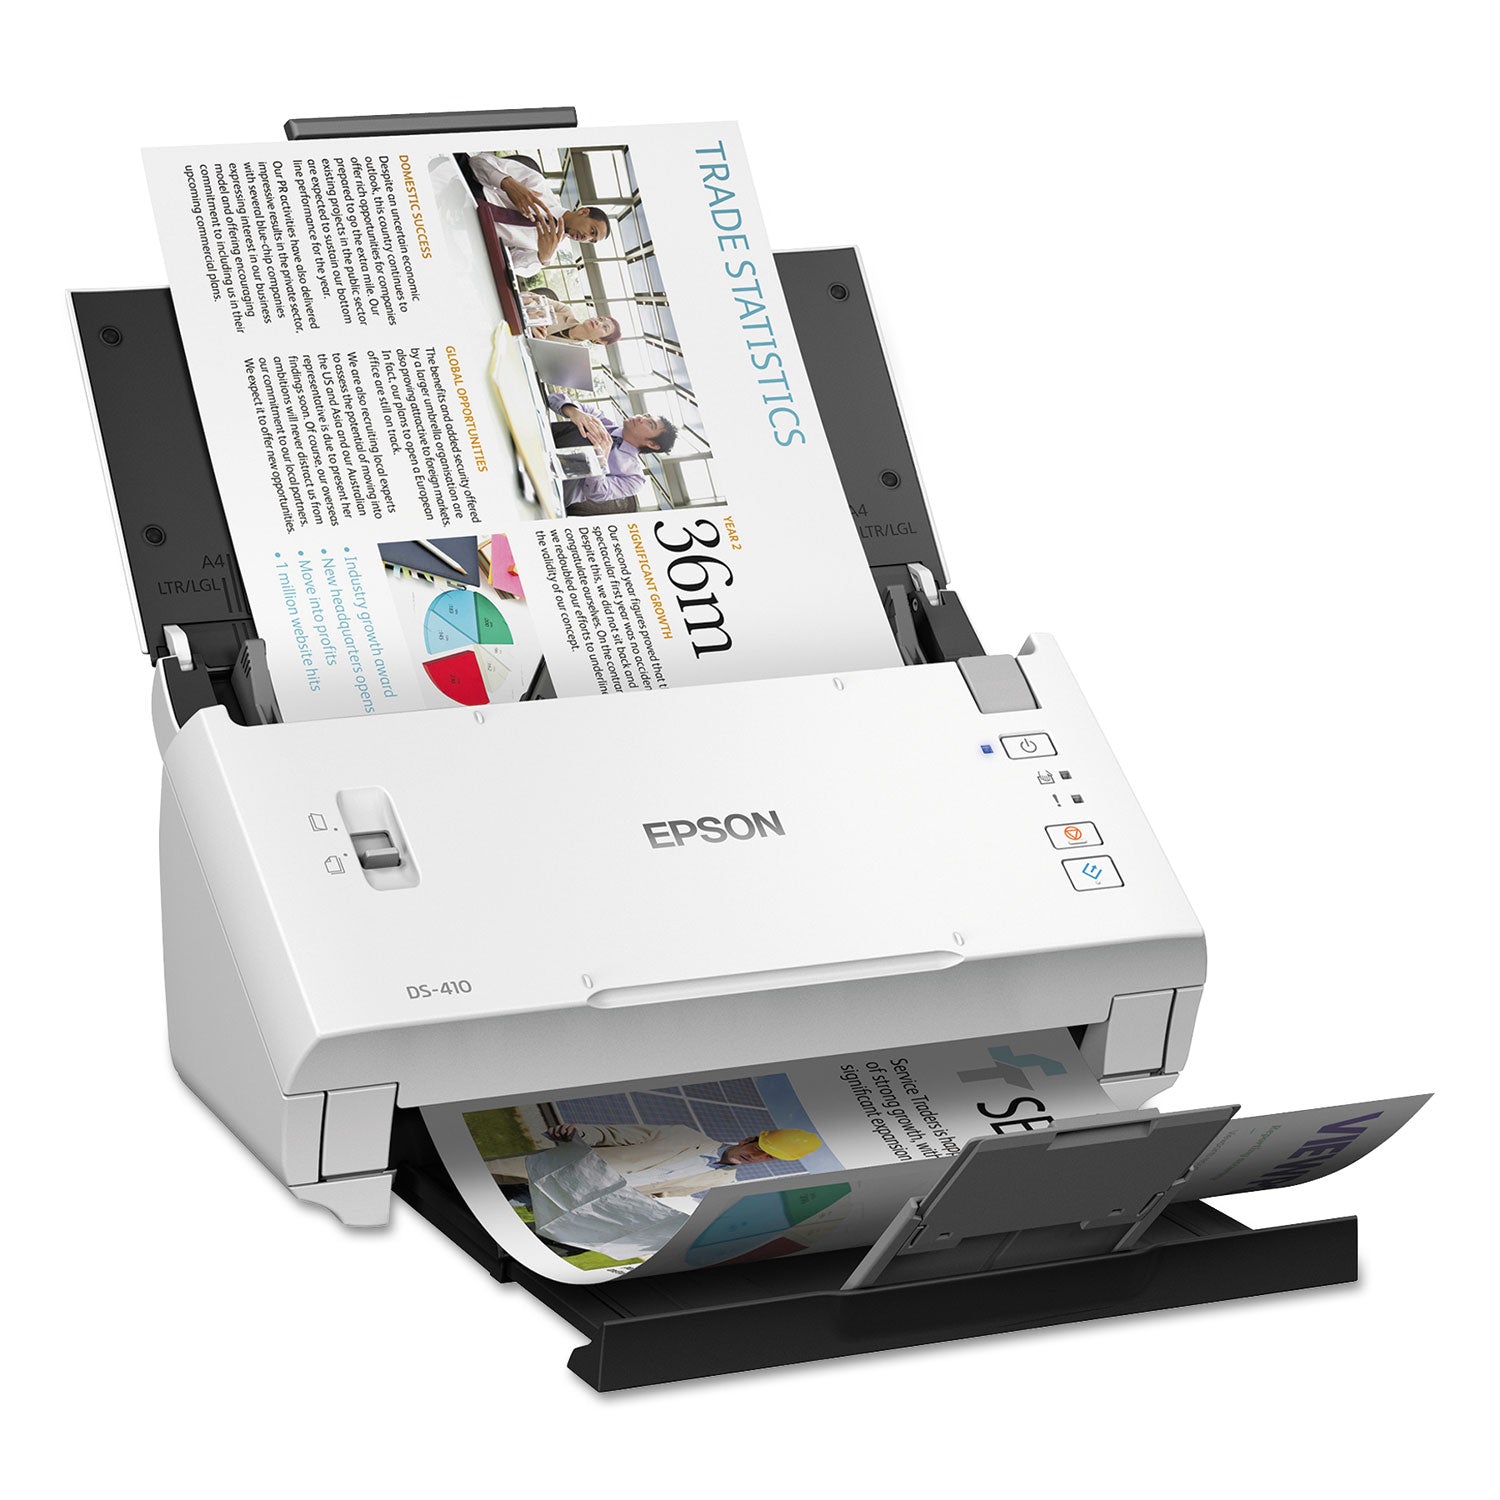 ds-410-document-scanner-600-dpi-optical-resolution-50-sheet-duplex-auto-document-feeder_epsb11b249201 - 8